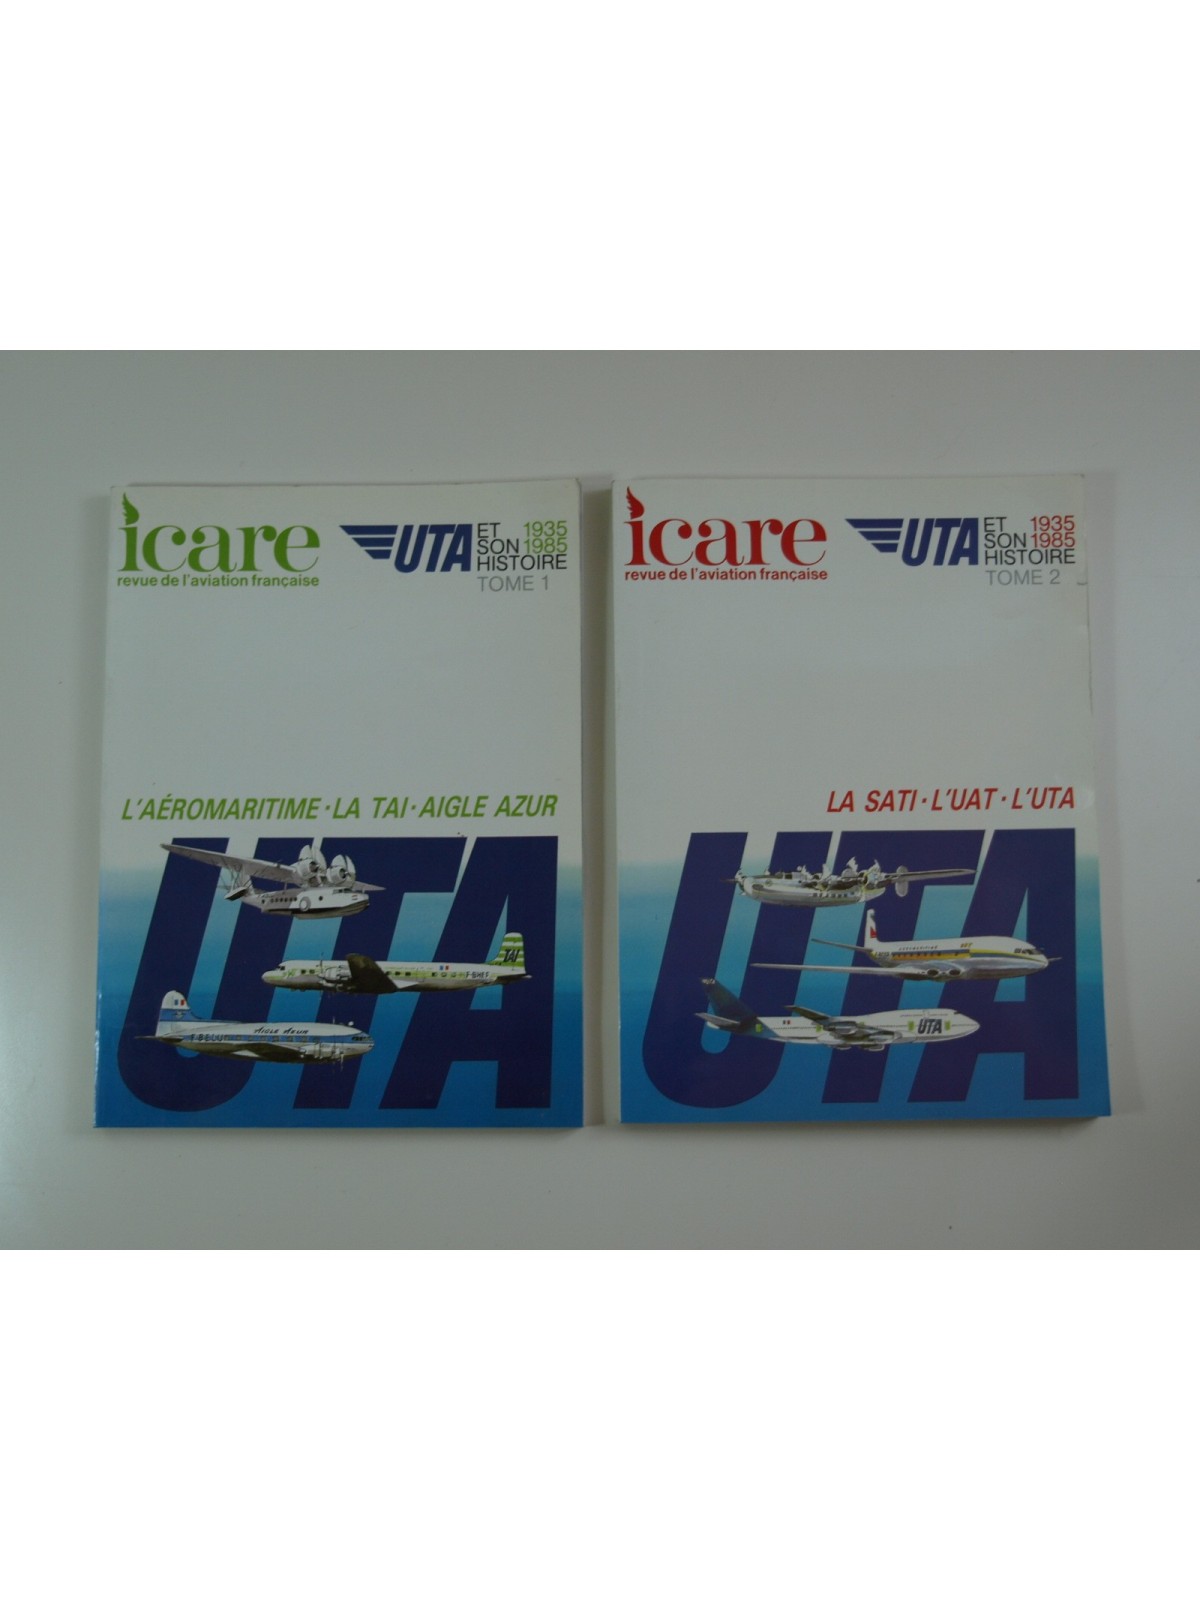 Revue Icare : UTA et son histoire 1935-1985. 2 tomes. N°115-117. Complet